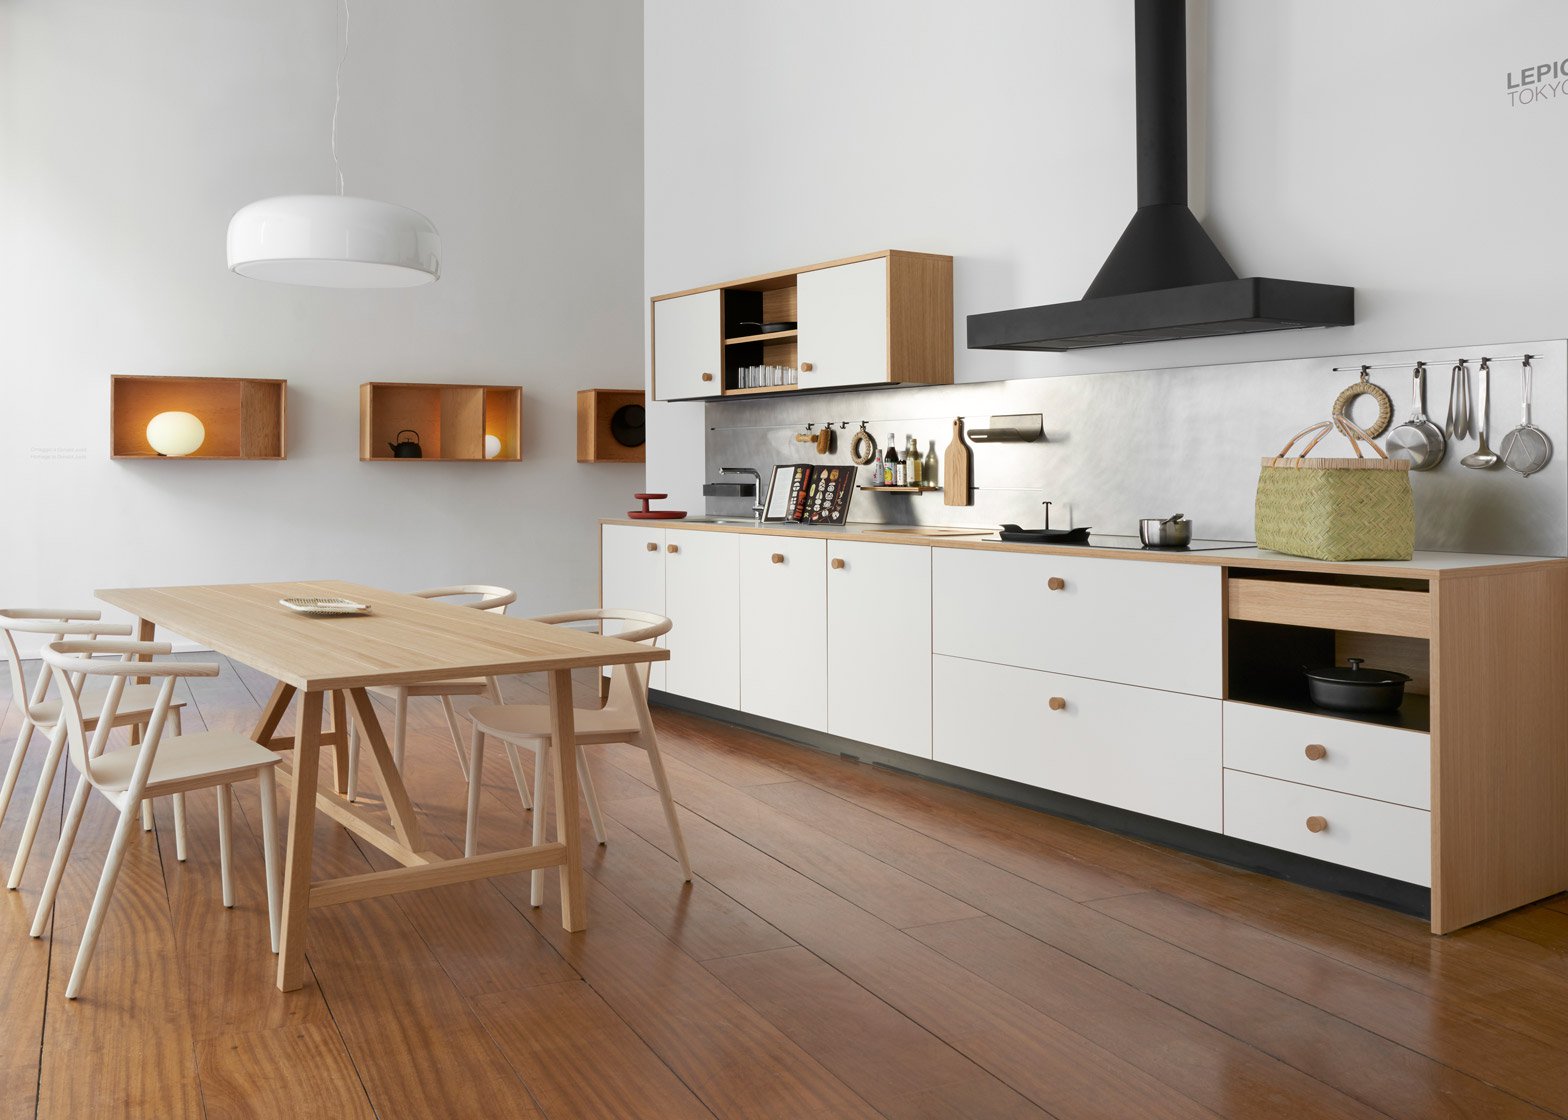 desain dapur minimalis di Lepic Kitchen karya Jasper Morrison dari Schiffini